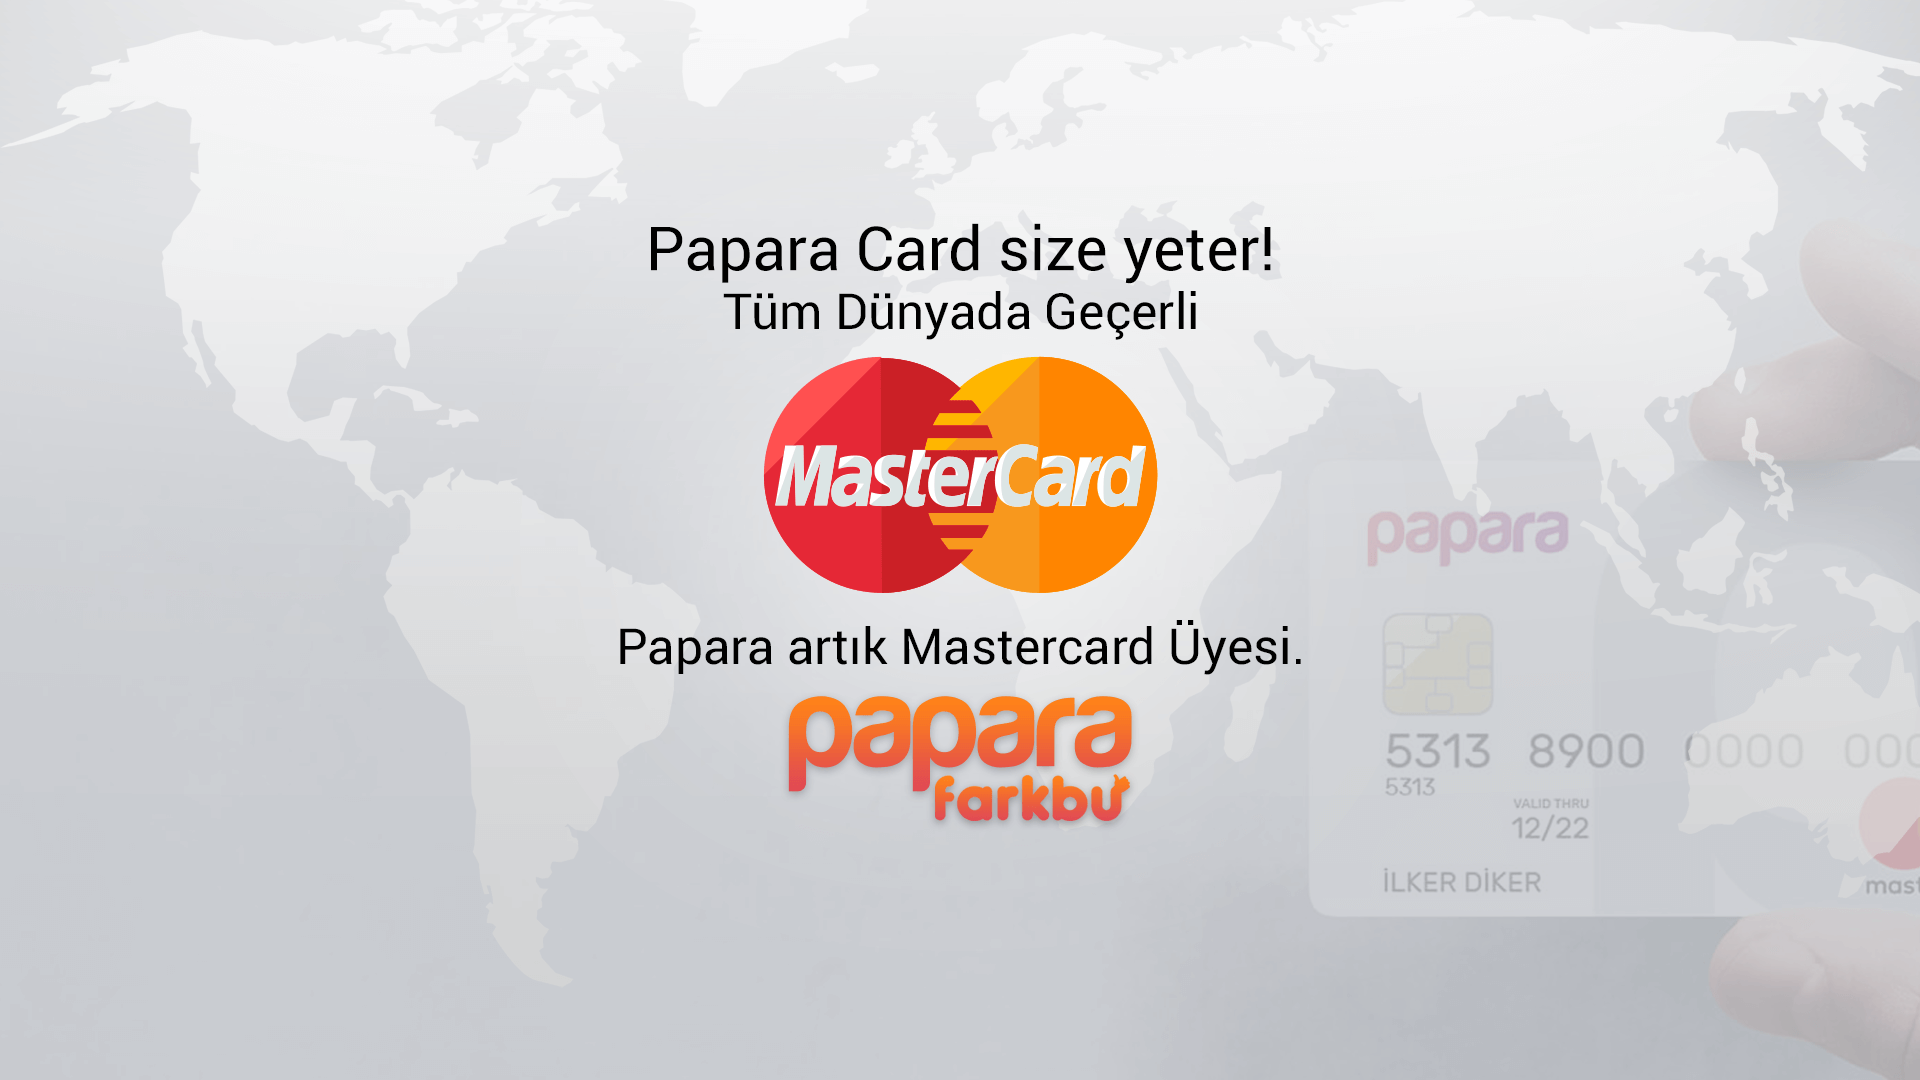 Papara Card